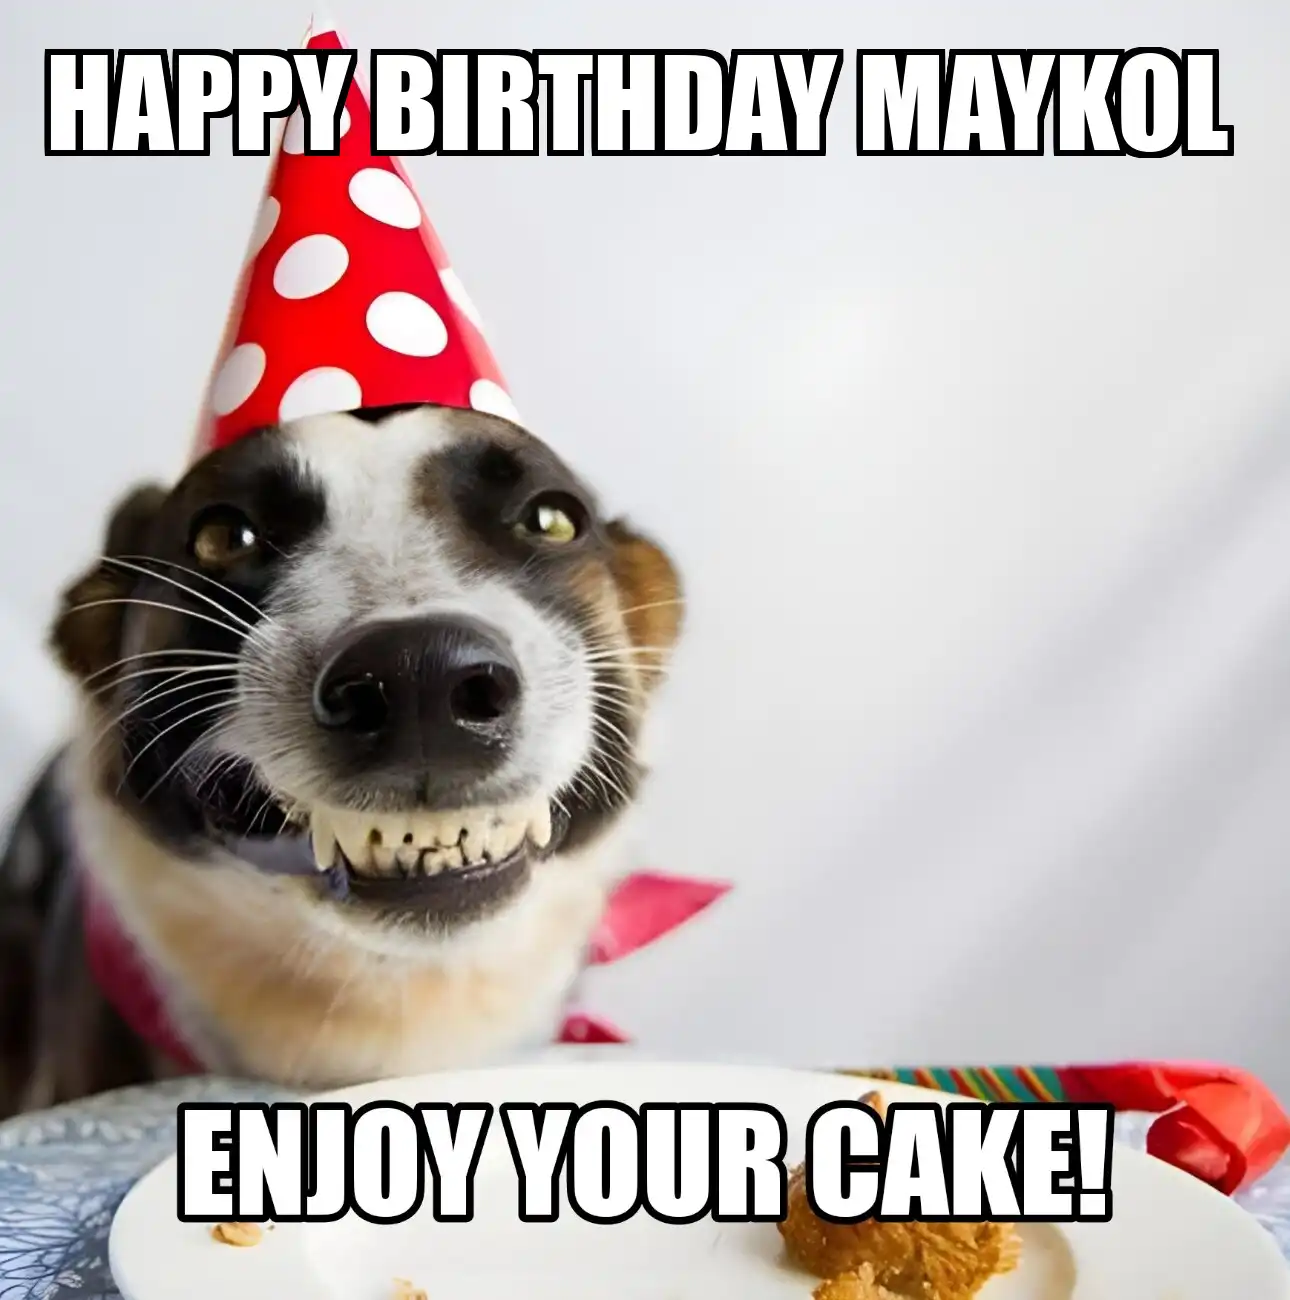 Happy Birthday Maykol Enjoy Your Cake Dog Meme